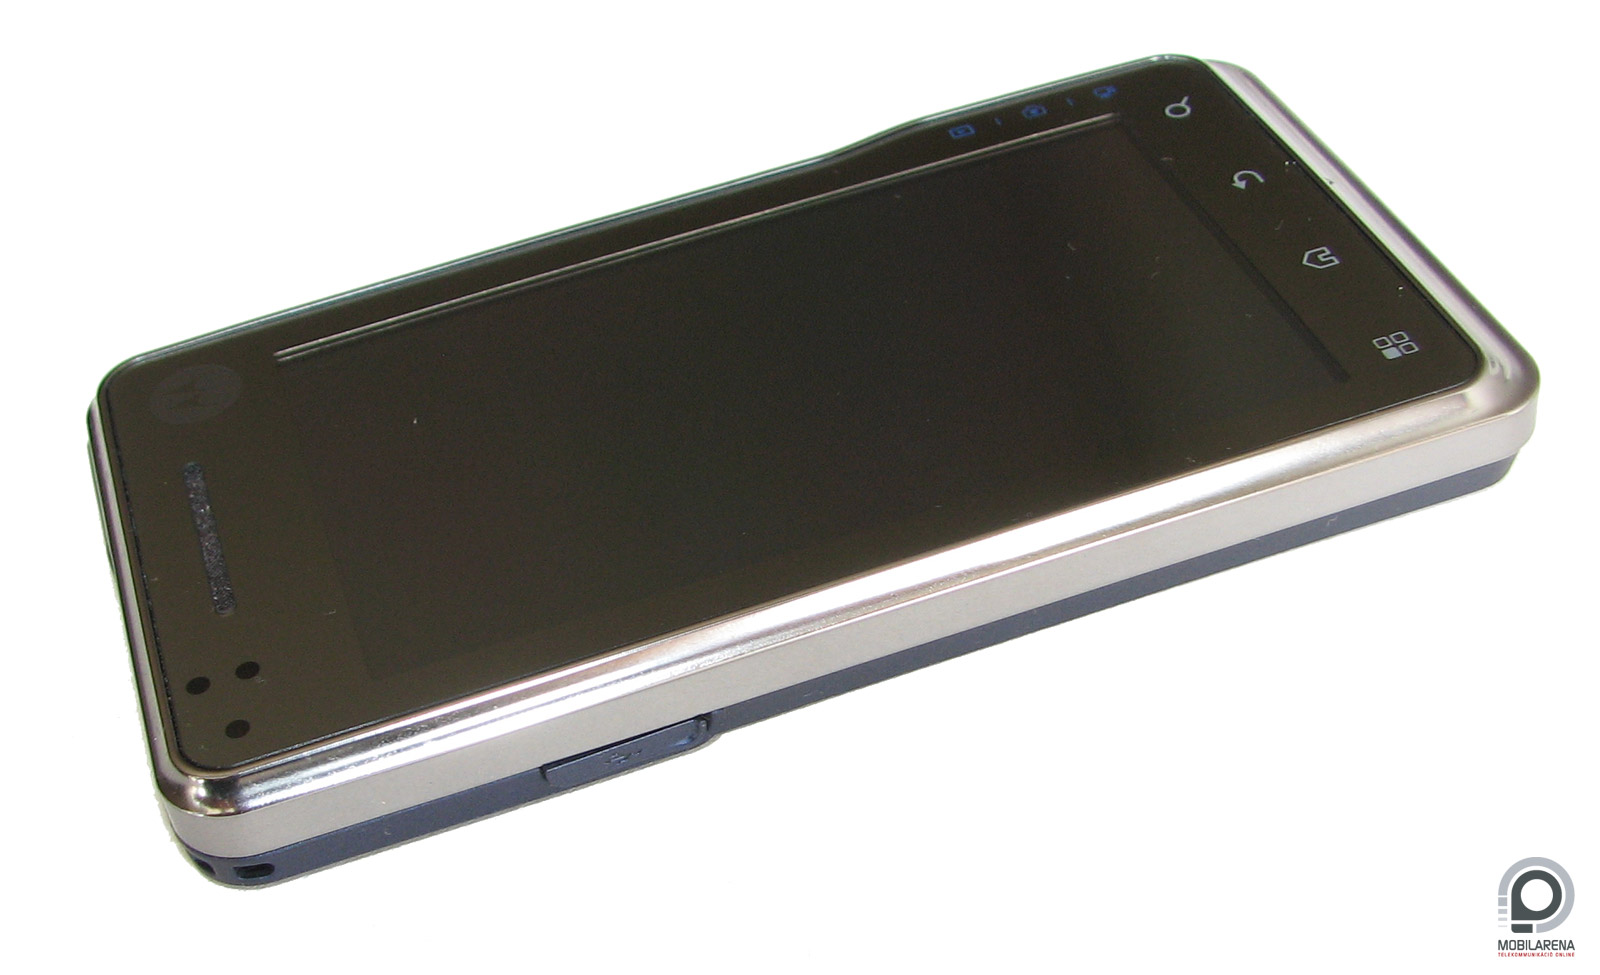 Обзор телефона Motorola Milestone xt720